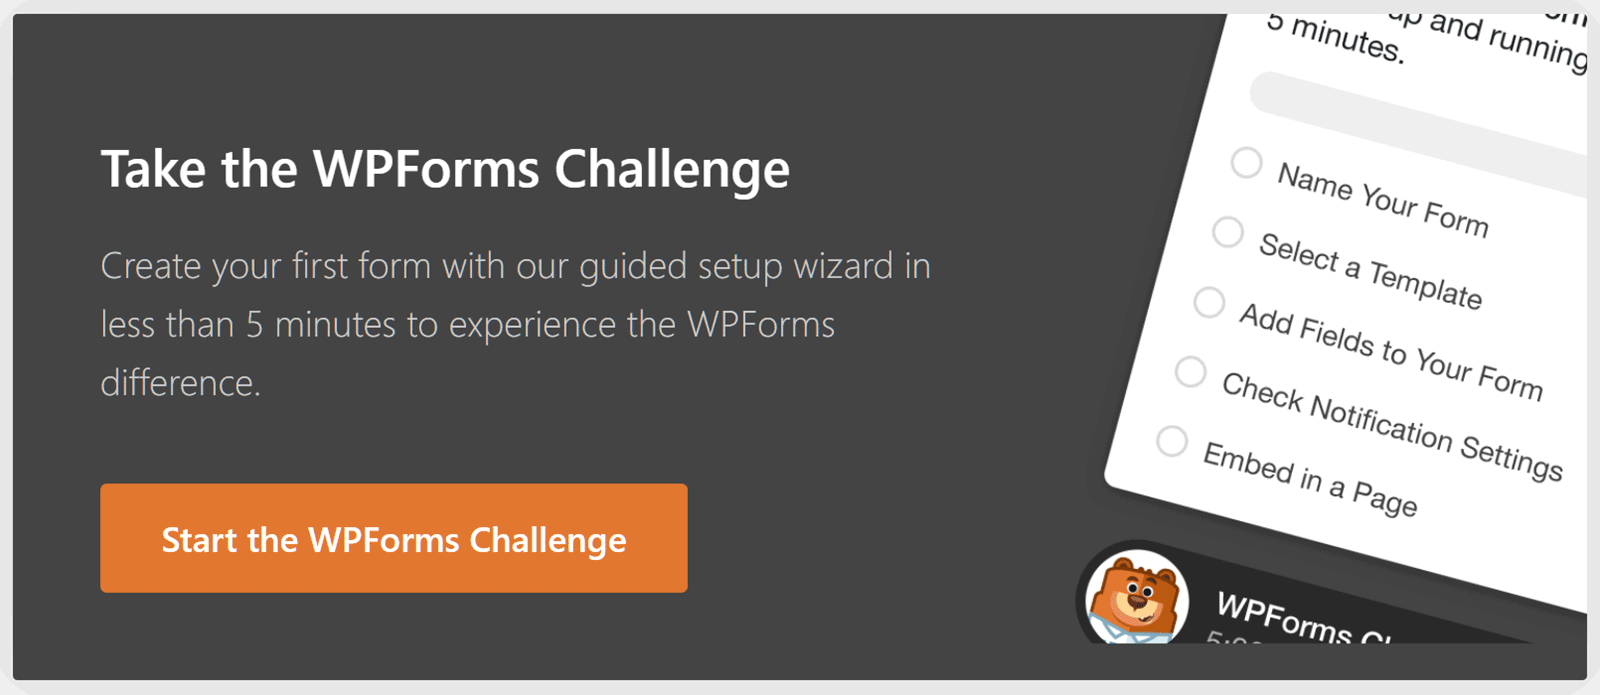 WPForms Quick Start Challenge